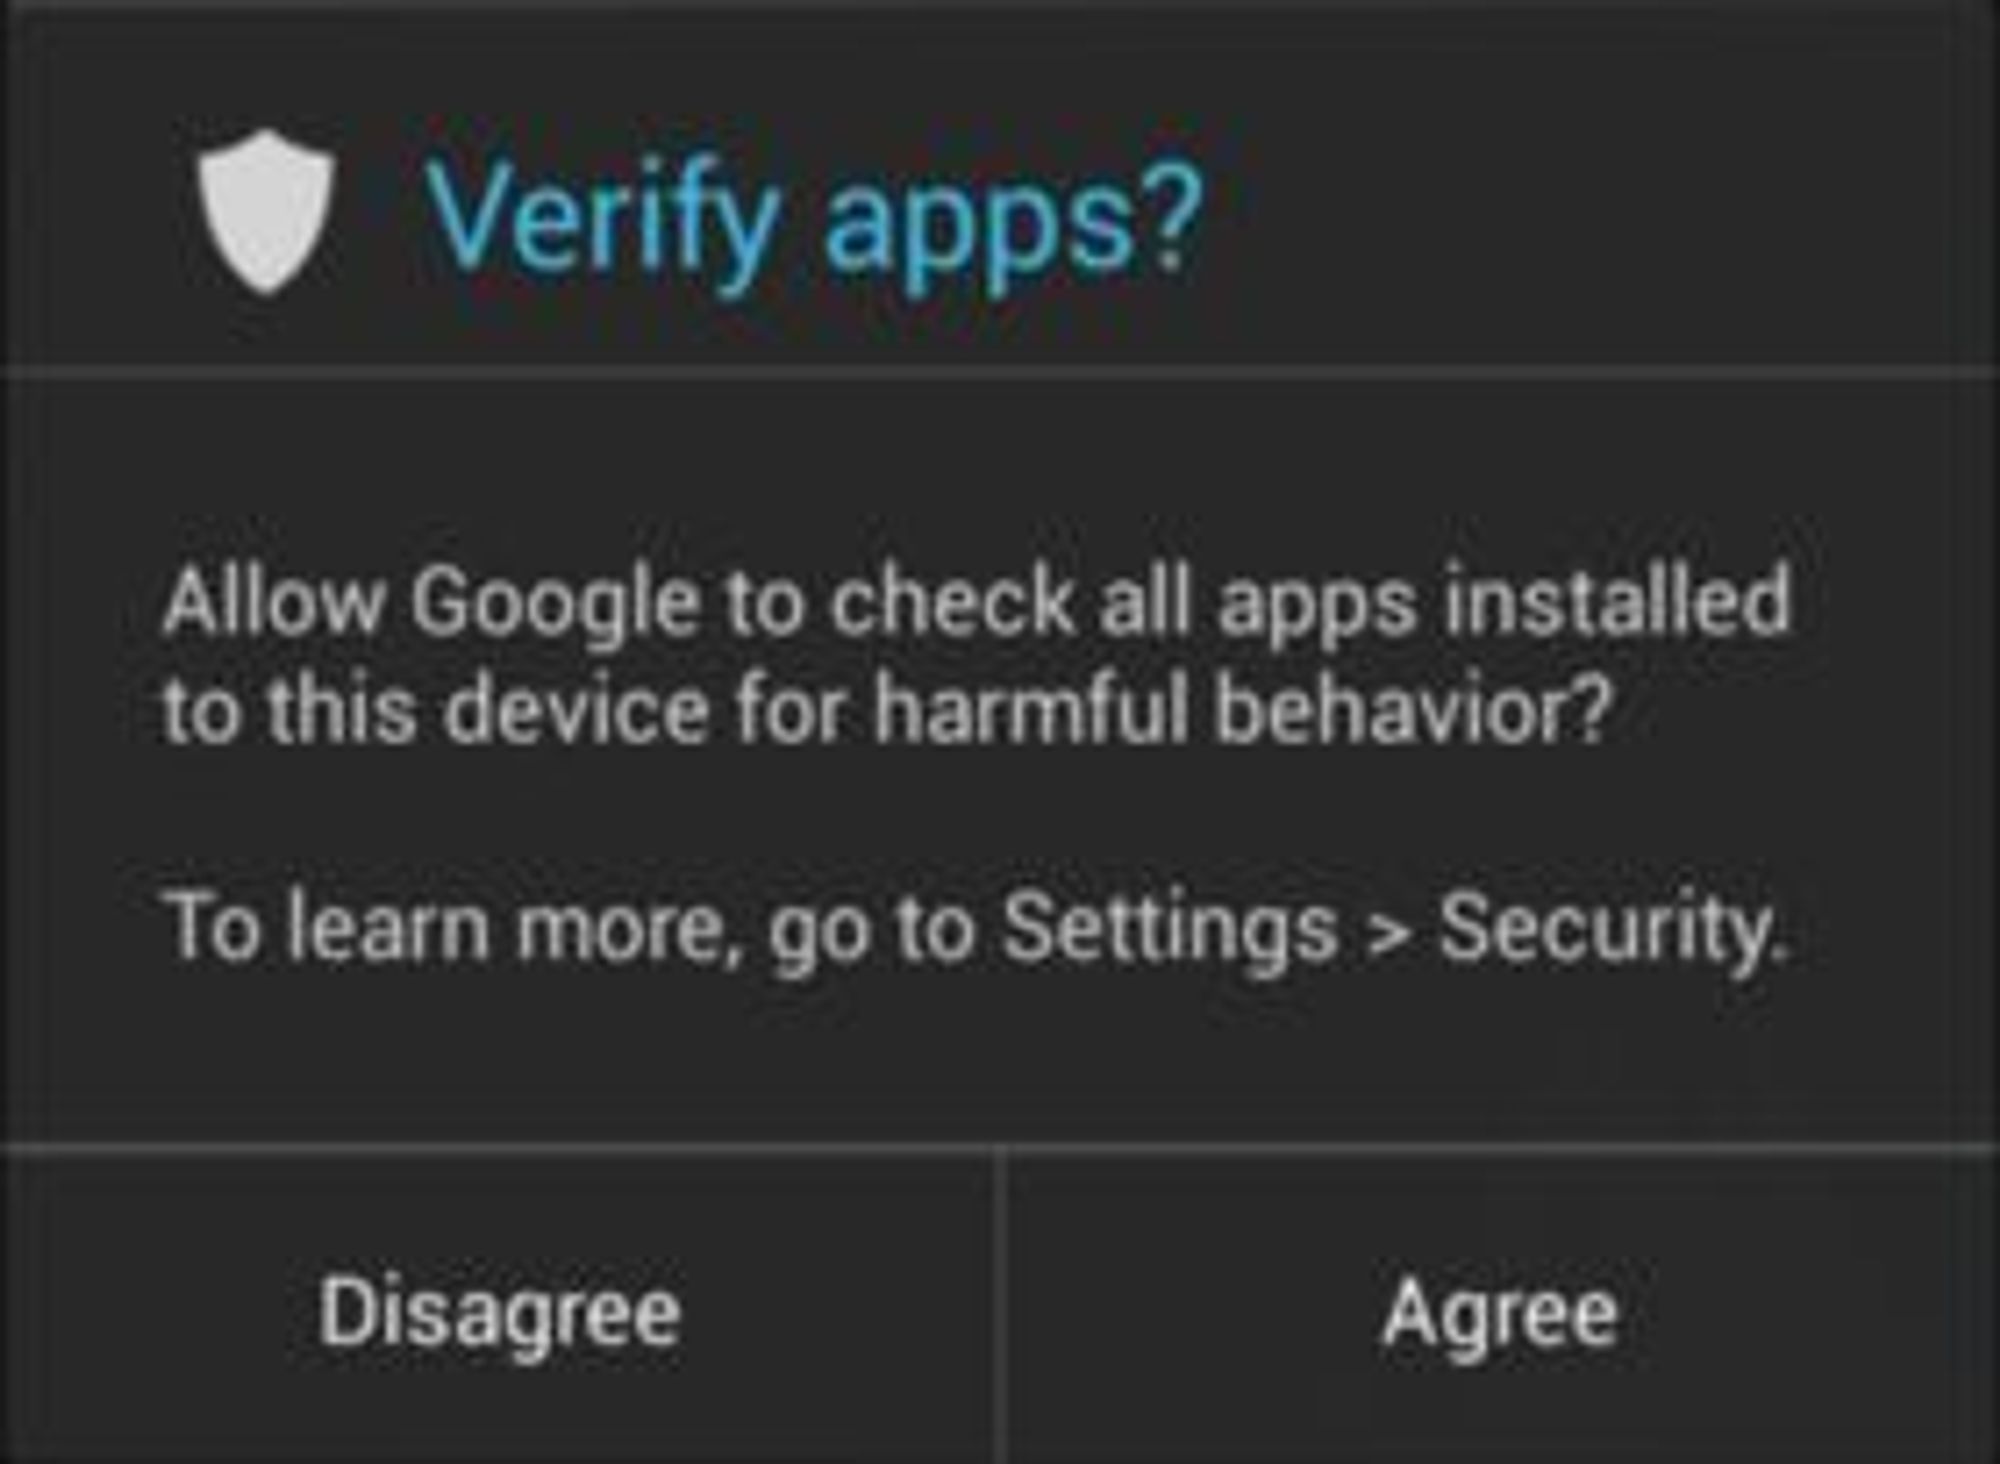 Android 4.2 spør brukeren om applikasjoner skal kontrolleres, dersom de installeres fra andre kilder enn Google Play Store.